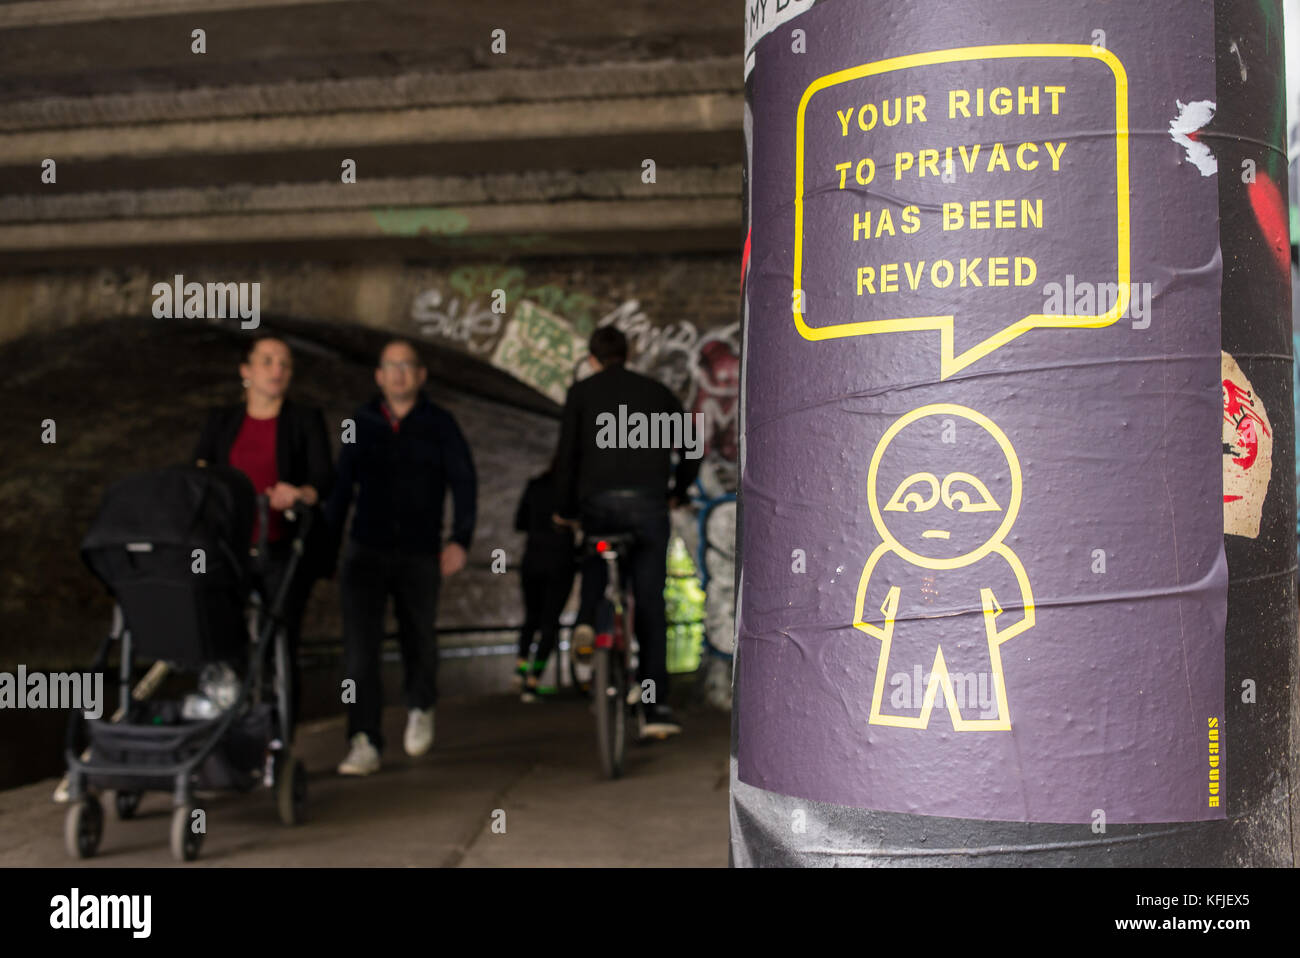 Street art poster accroché sur un tunnel près de la colonne de l'artiste subdude avec homme stylisé et cartoon avec slogan "Votre droit à la vie privée a été révoquée". Banque D'Images